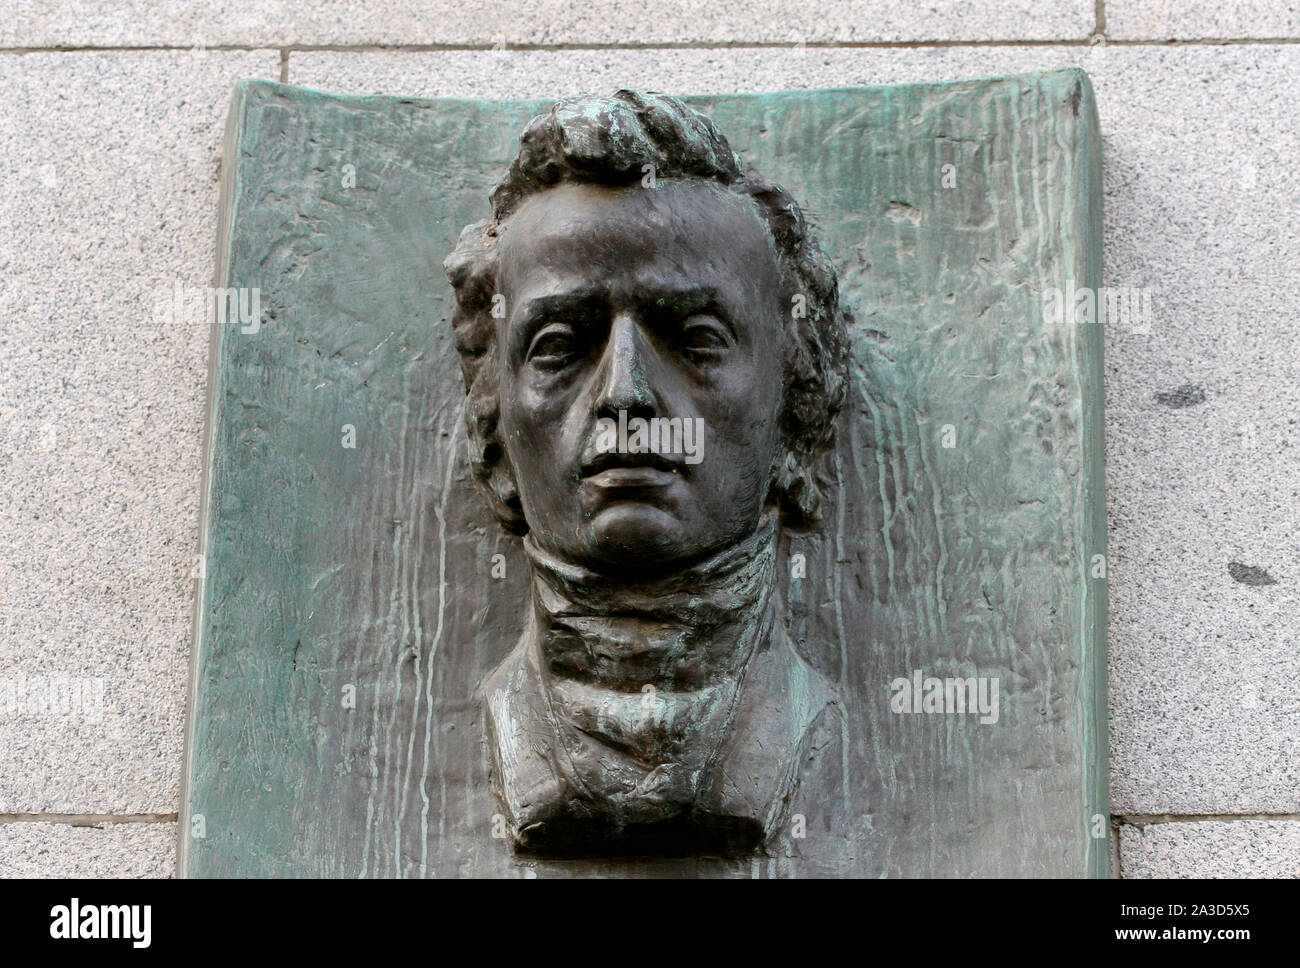 Frederic Chopin (1810 - 1849). Der polnische Komponist und virtuoser Pianist der romantischen Epoche. Gedenktafel an der Wand der Tschechischen Nationalbank, Haus, wo Chopin lebte von 1829 bis 1830 in der Stadt. Prag, Tschechische Republik. Stockfoto